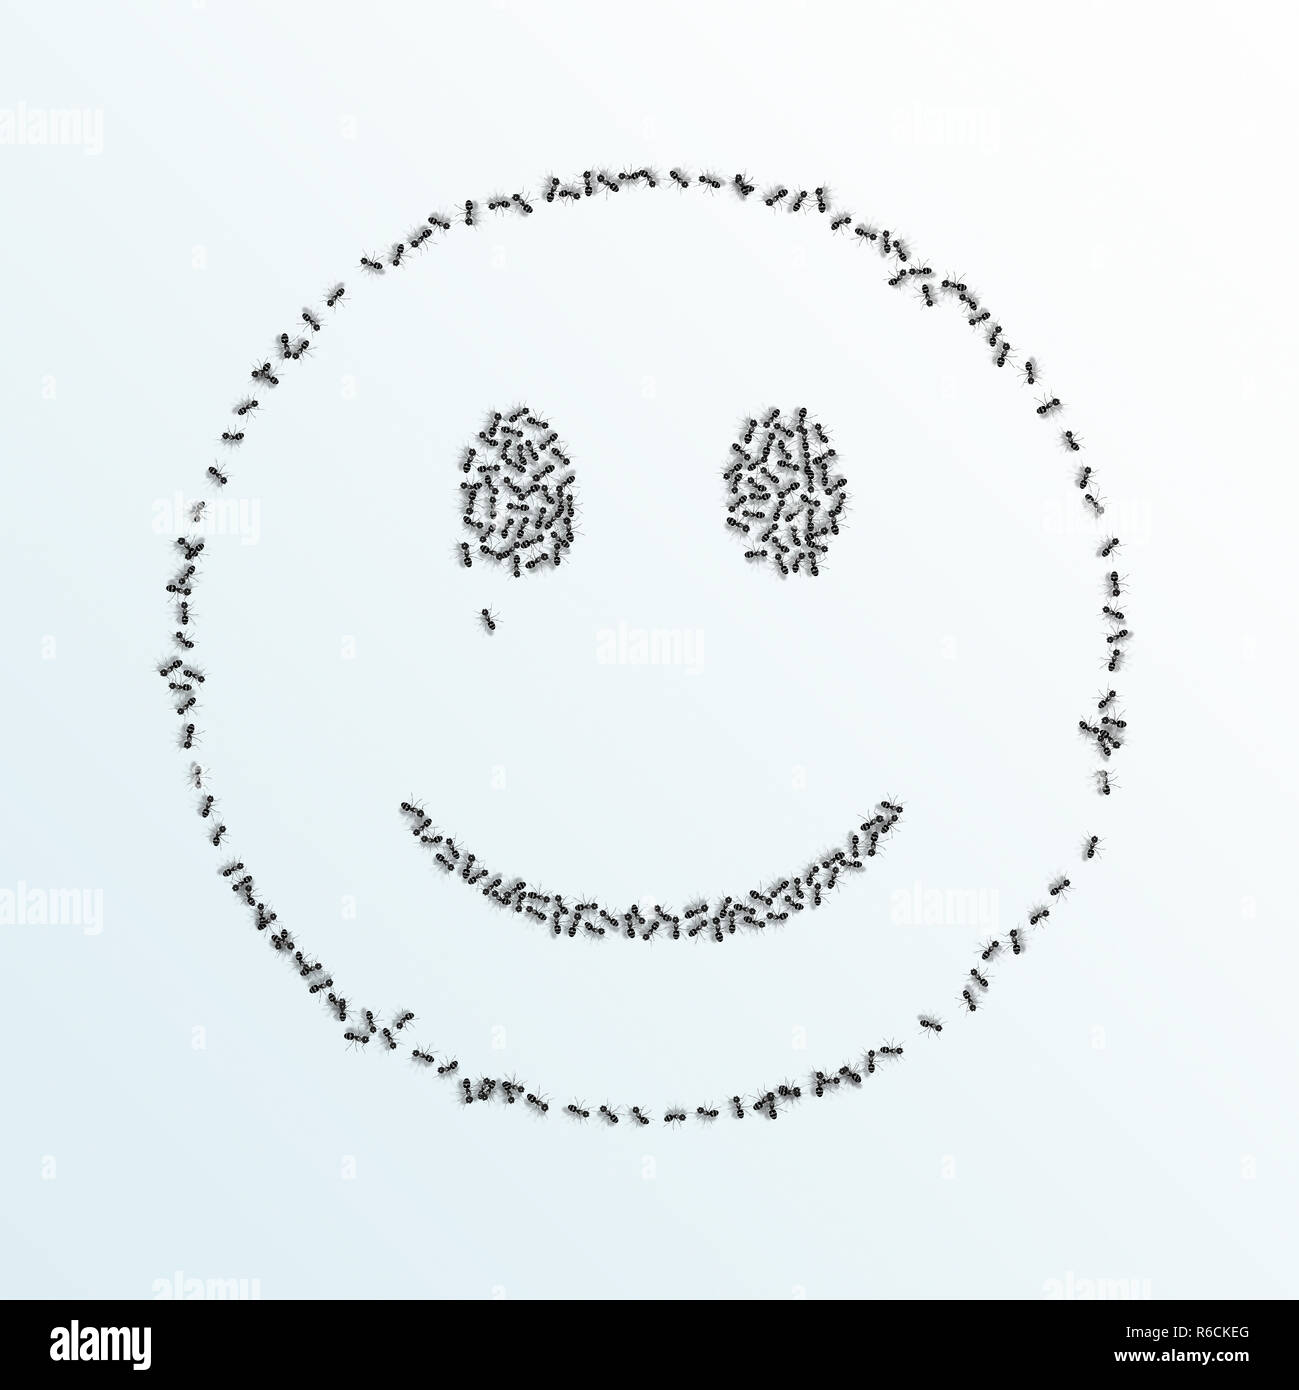 Image numérique monochrome de fourmis formant un contour d'un smiley sur un fond blanc Banque D'Images